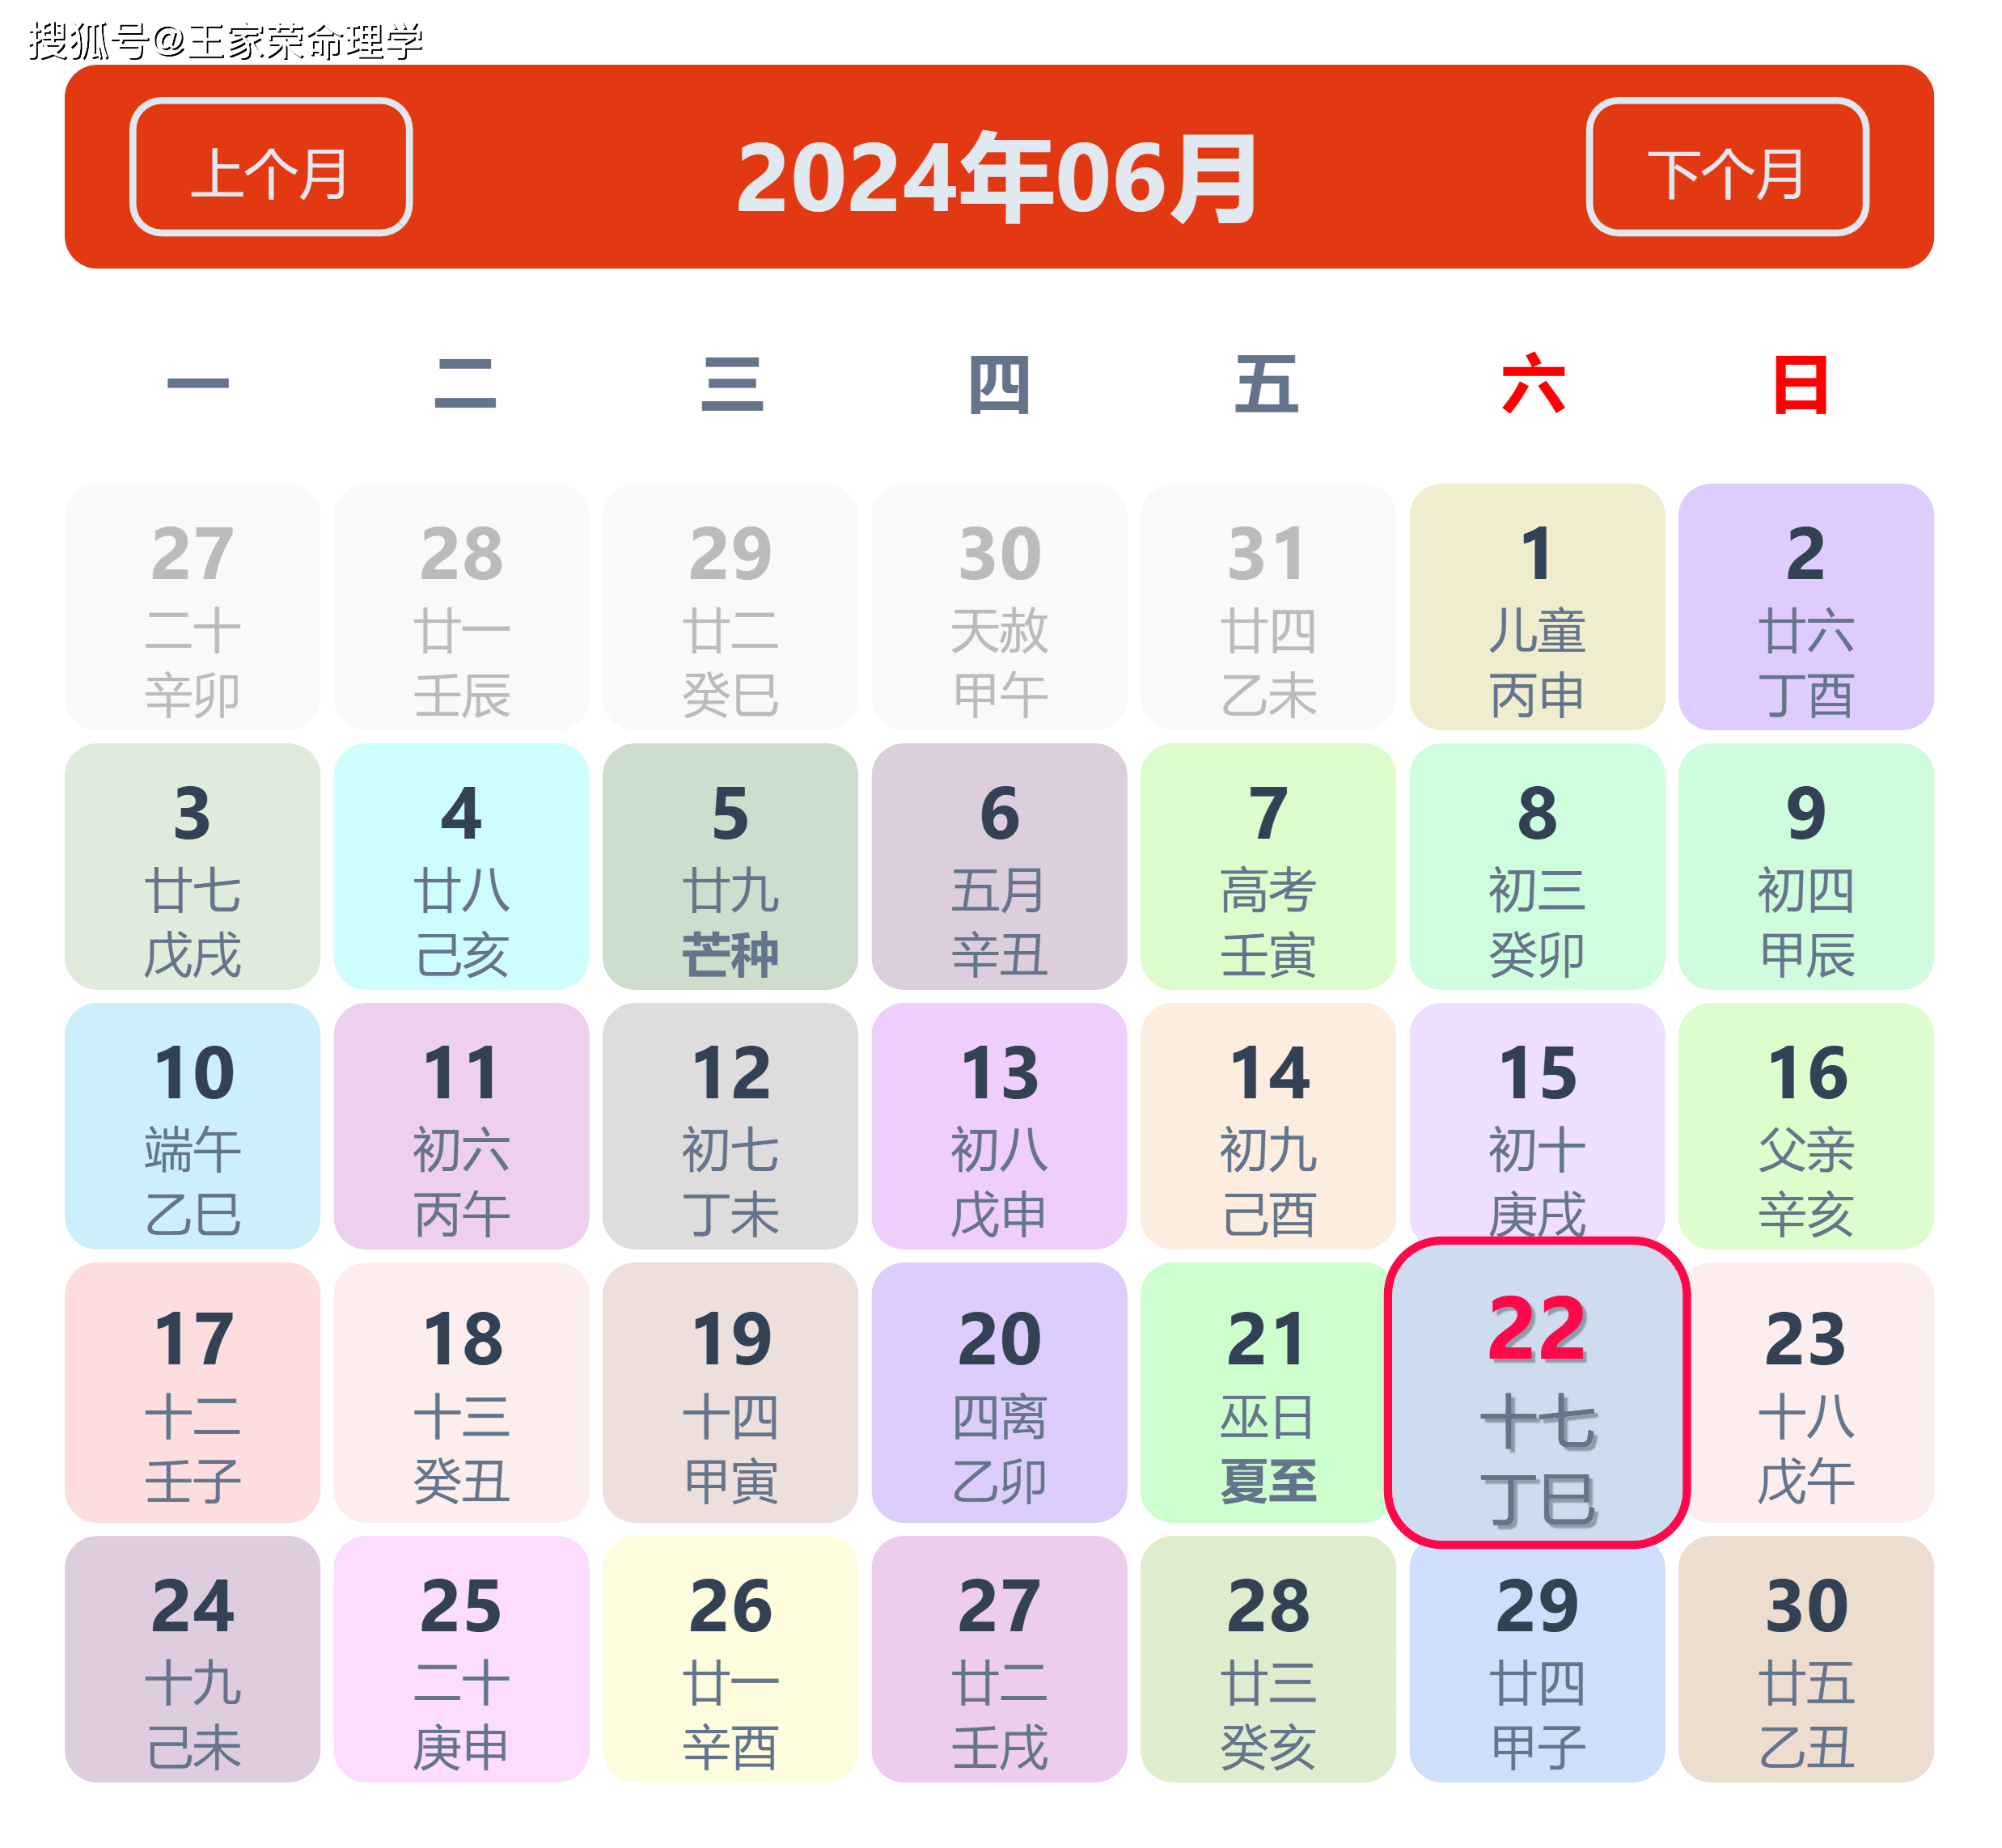 老黄历看日子生肖运势查询 2024年6月22日